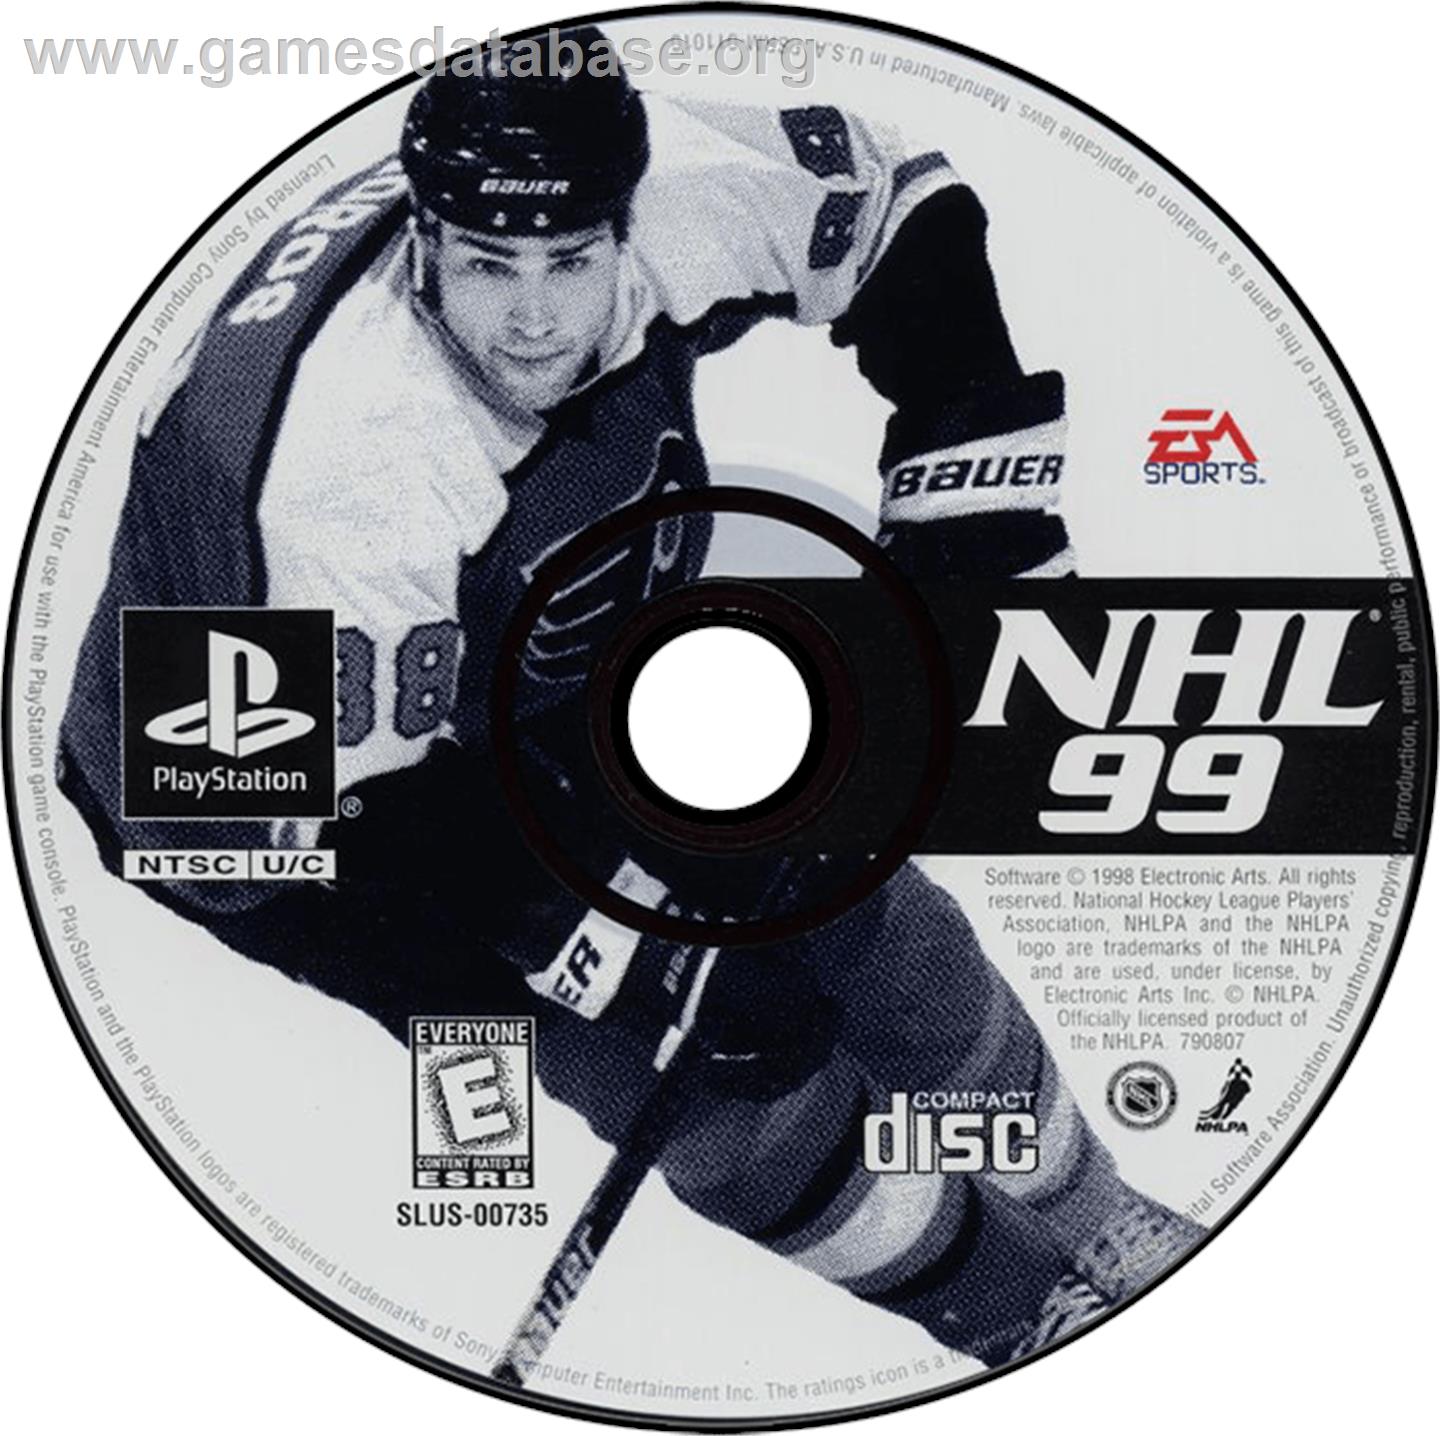 NHL 99 - Sony Playstation - Artwork - Disc